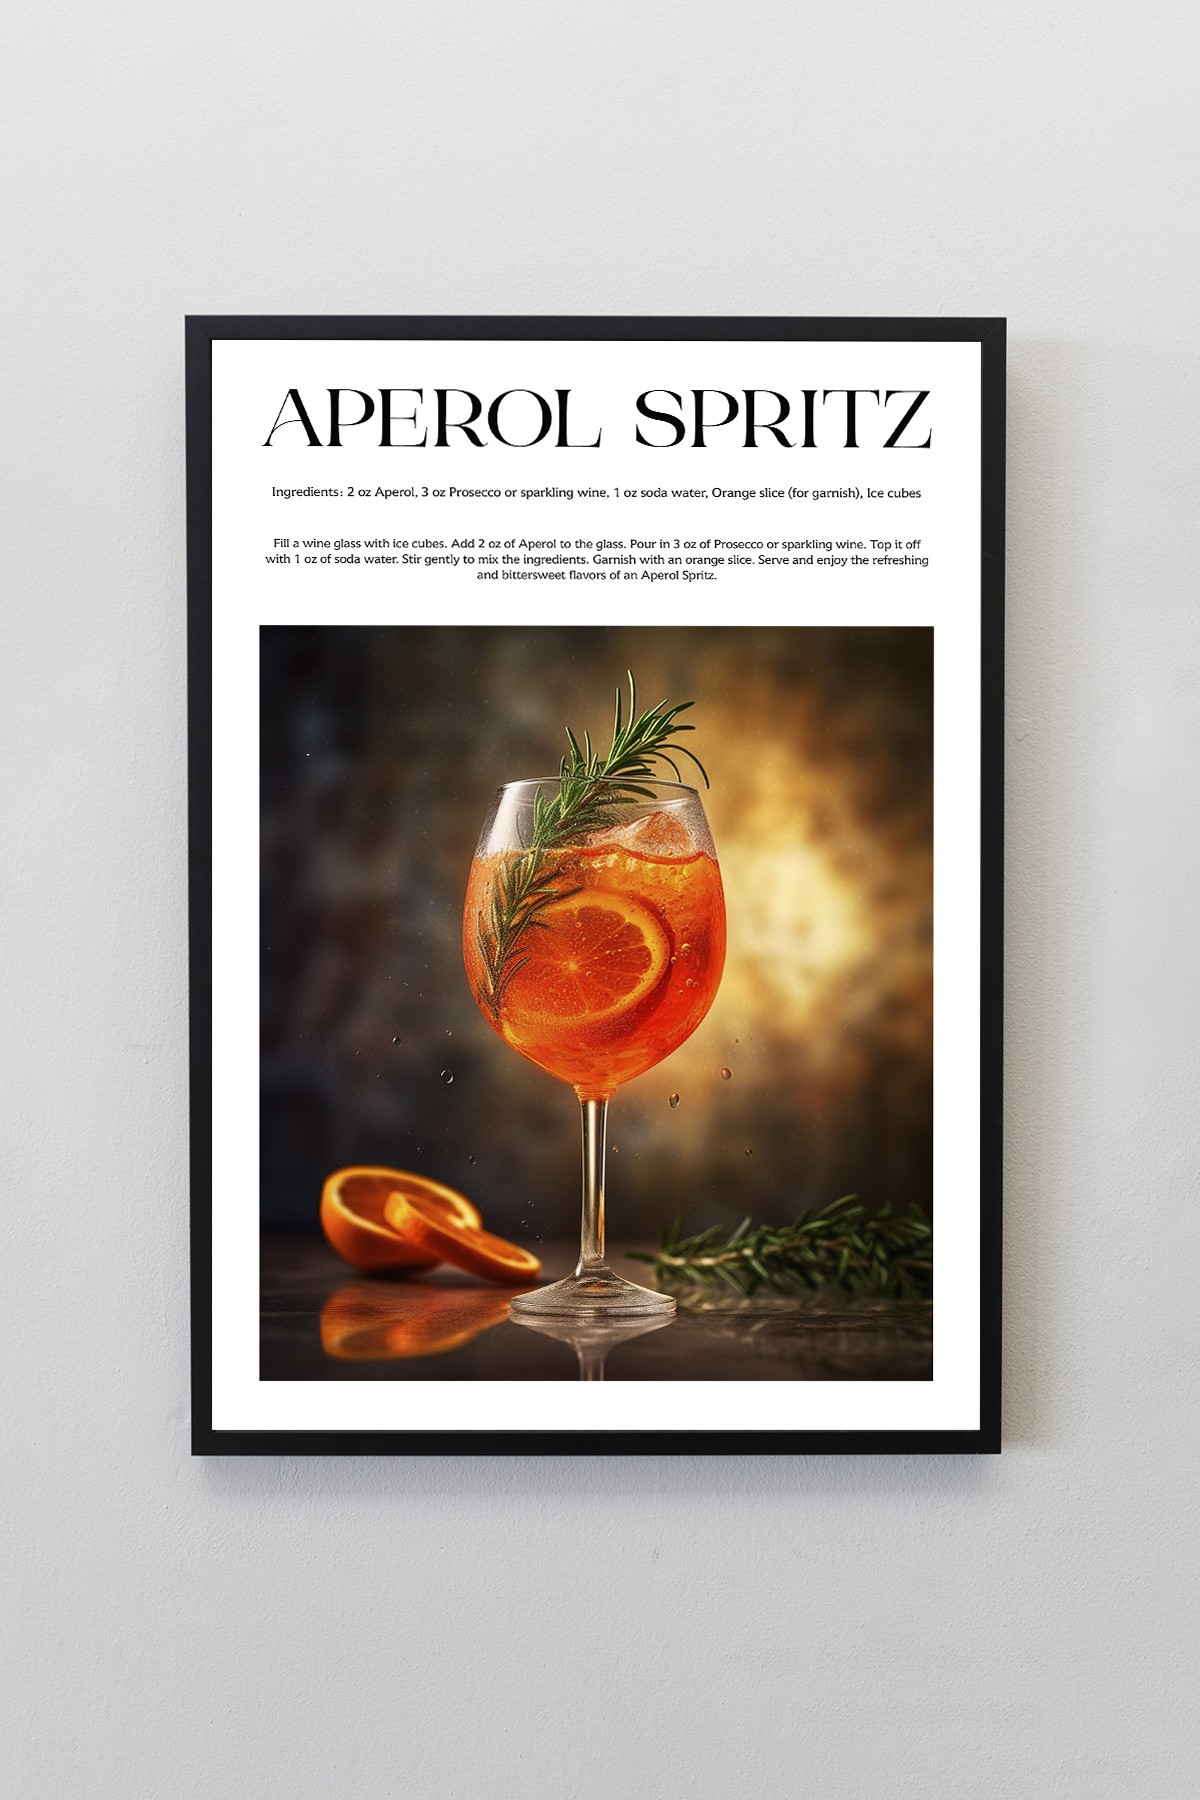 Aperol Spritz Kokteyl Tarifleri Tasarımlı Çerçeveli Poster Tablo